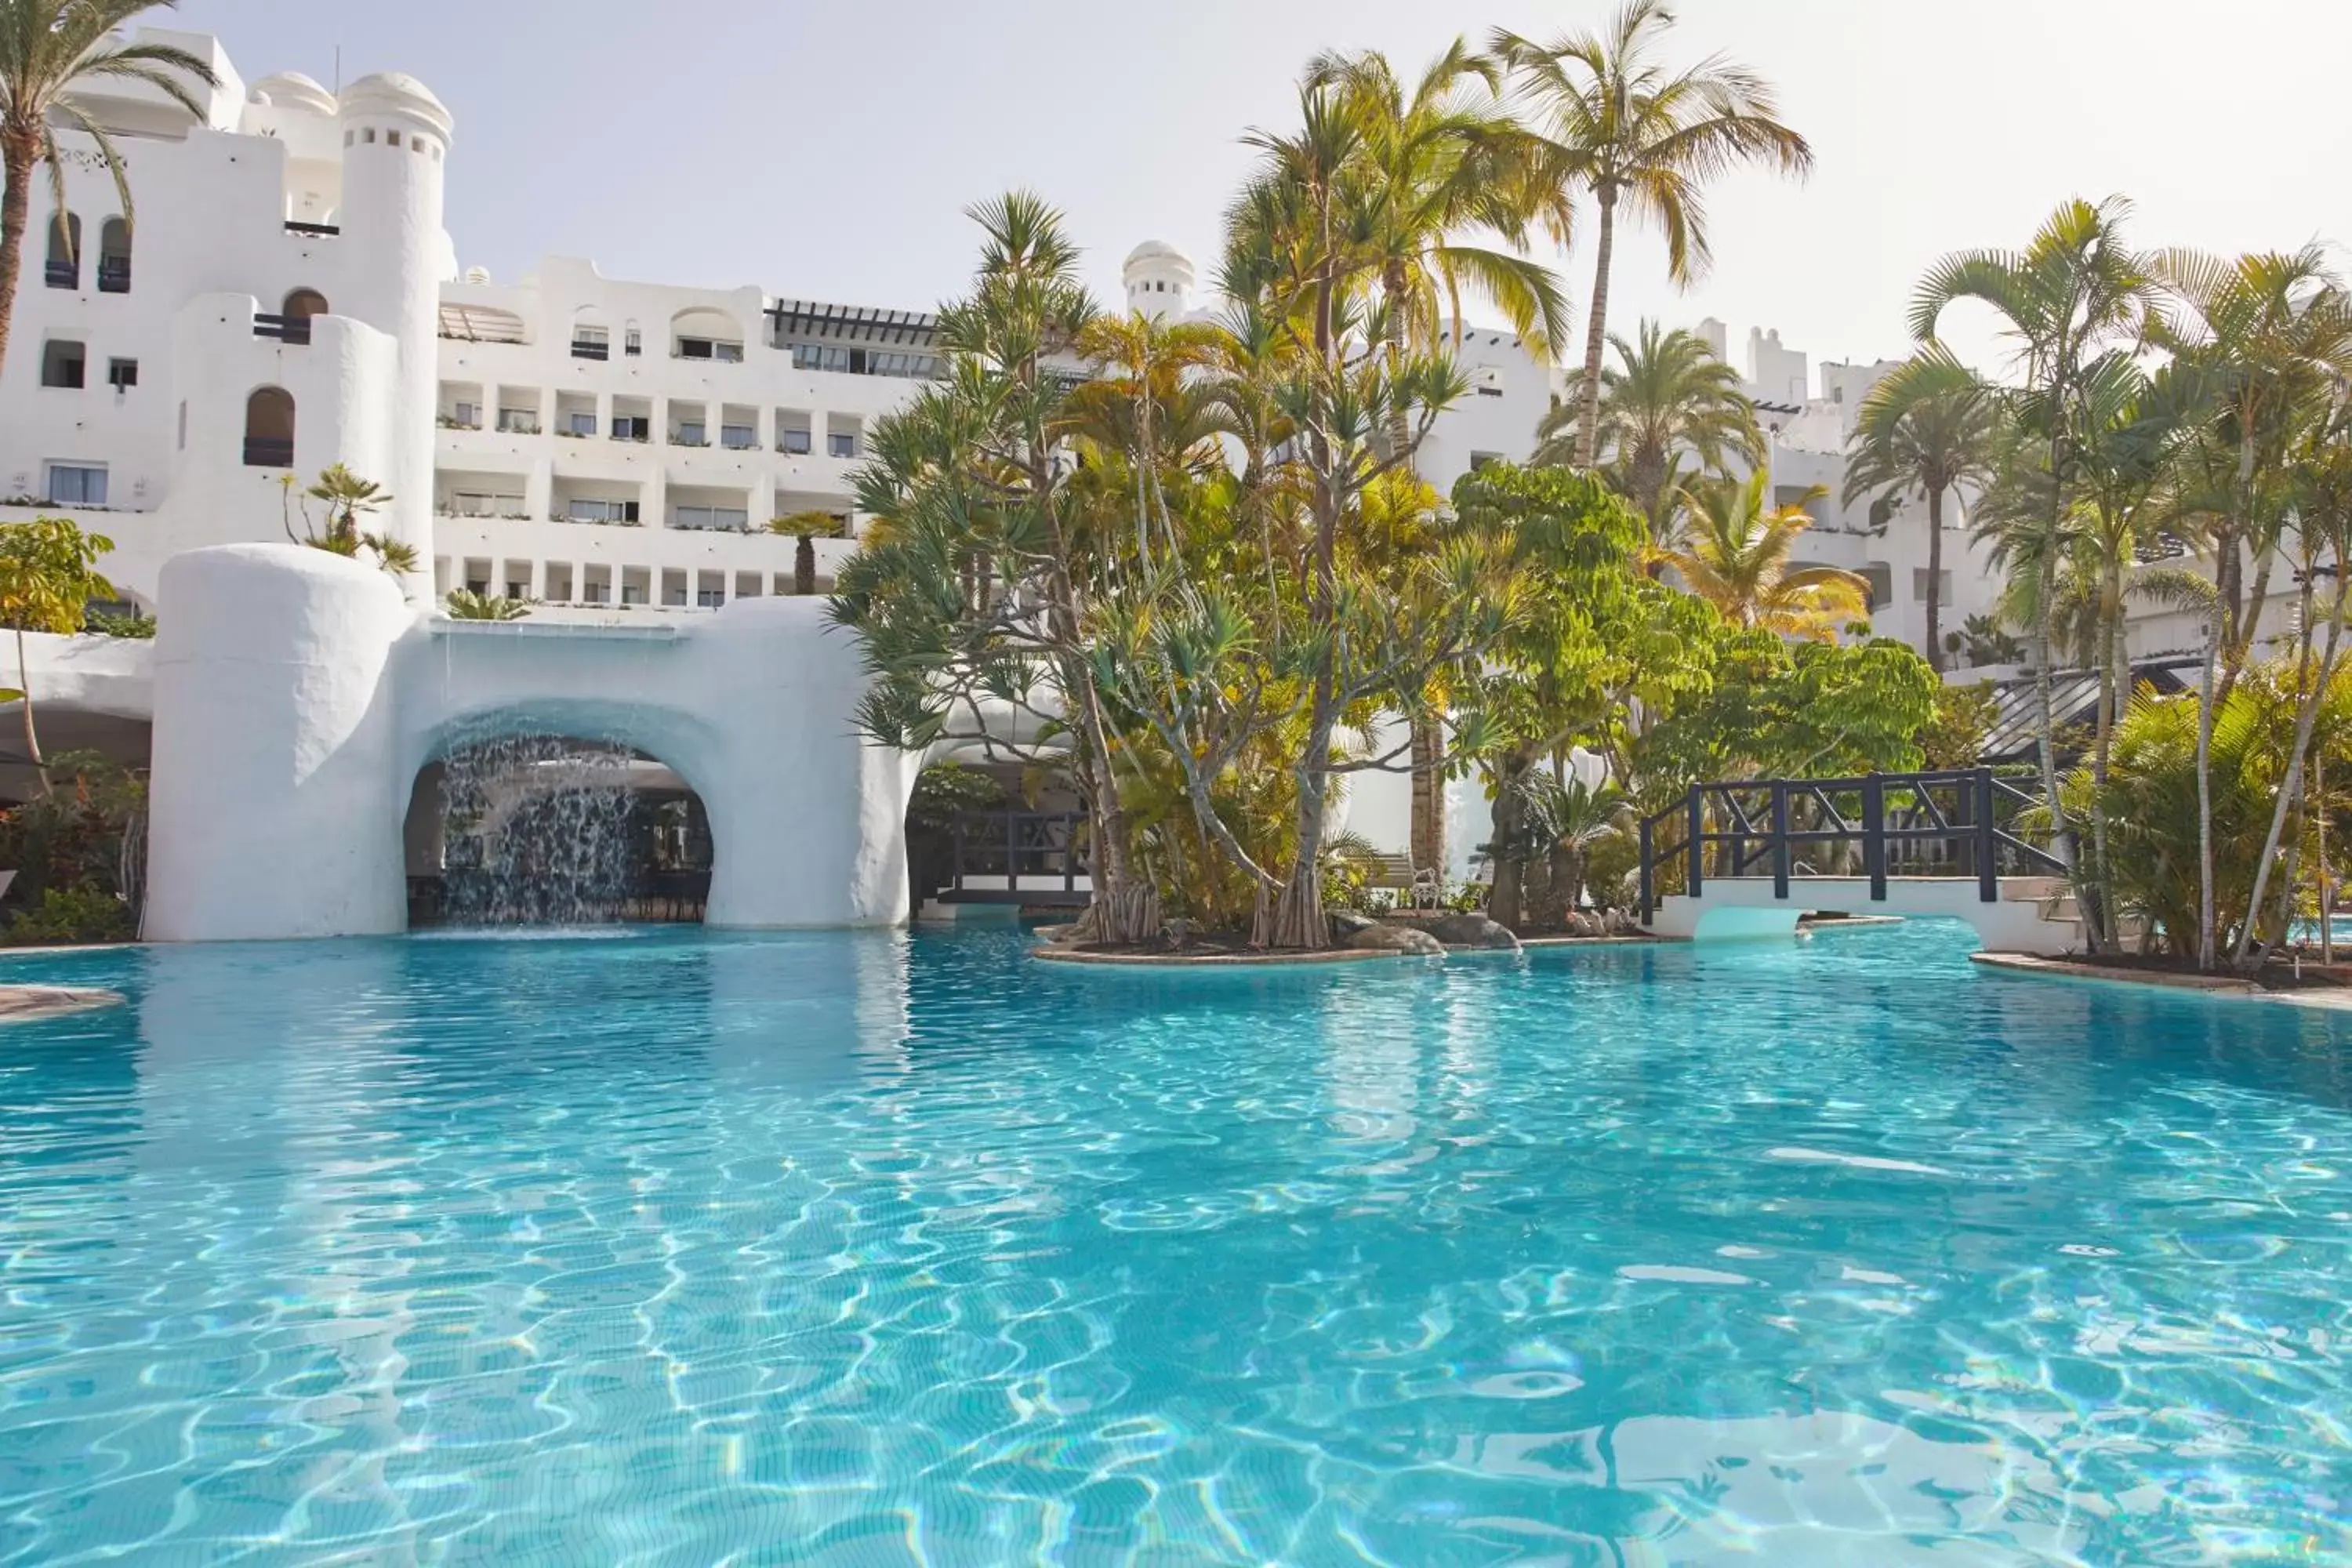 Pool view, Swimming Pool in Dreams Jardin Tropical Resort & Spa